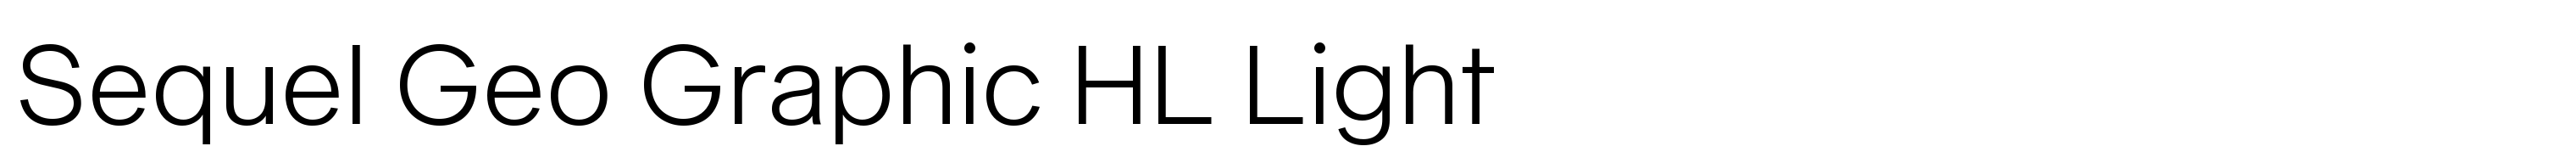 Sequel Geo Graphic HL Light